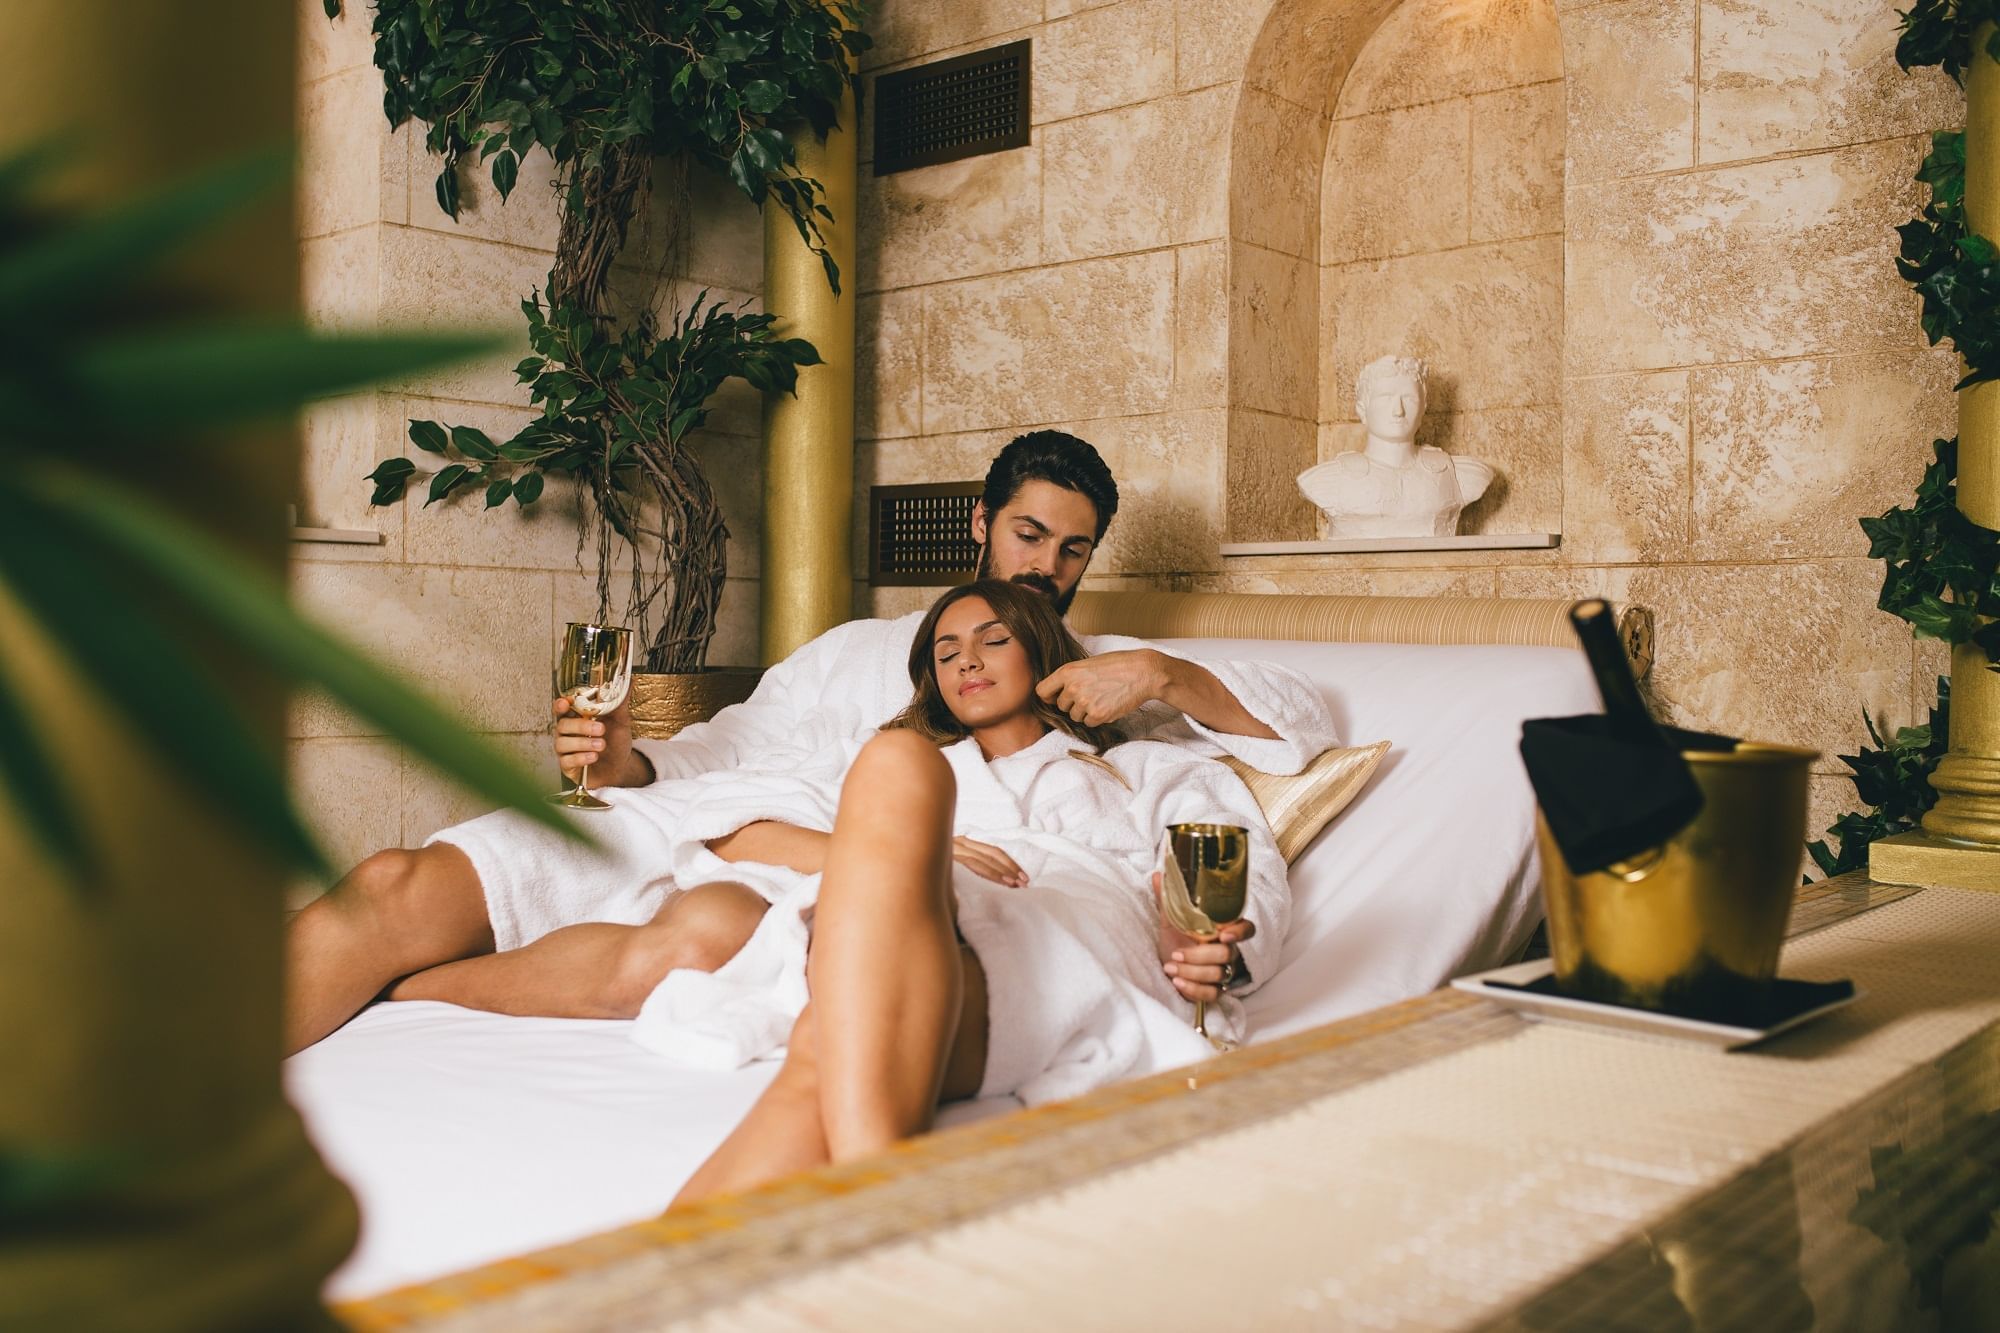 Испанец решил снять горячее частное порно со своей новой подружкой в отеле онлайн